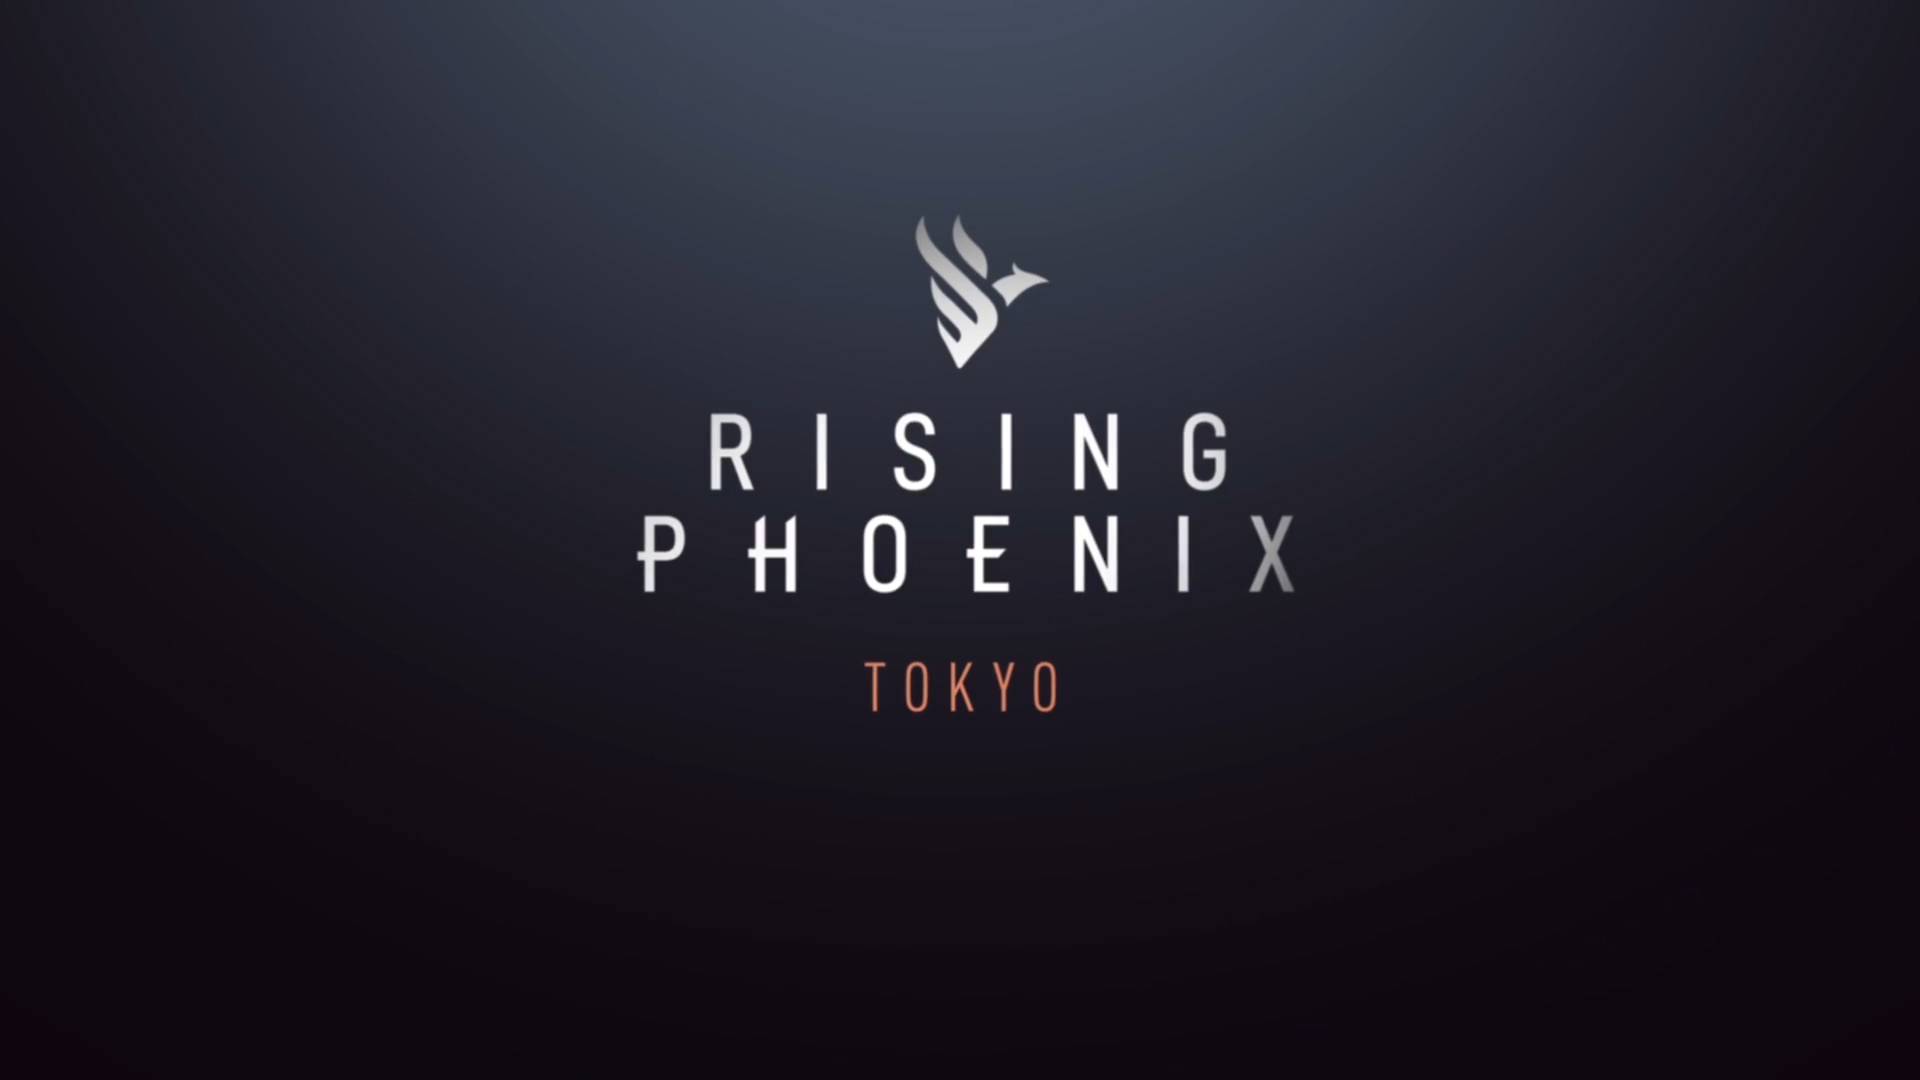 Rising Phoenix - Wikipedia